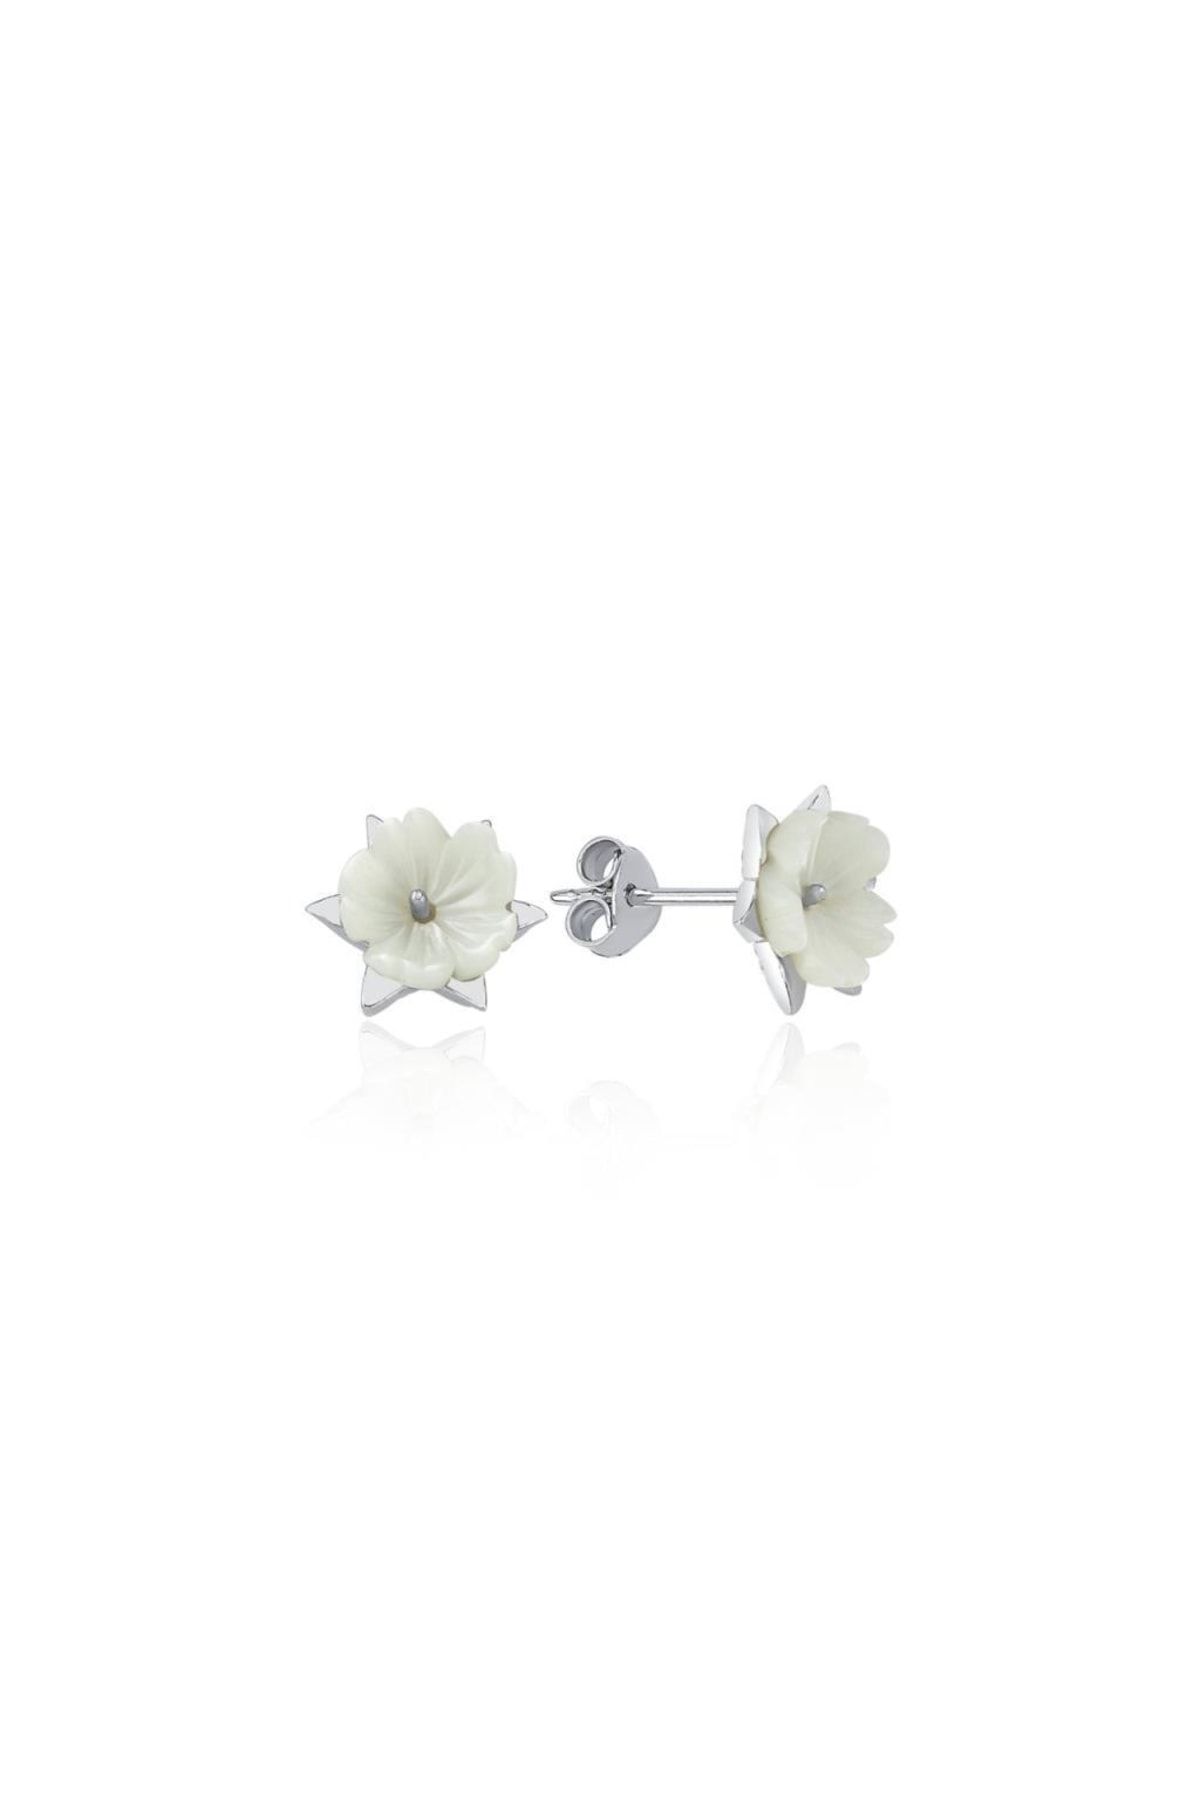 Mia Vento Parıltılı Manolya Çiçeği Yıldızı Flowers Gümüş Küpe